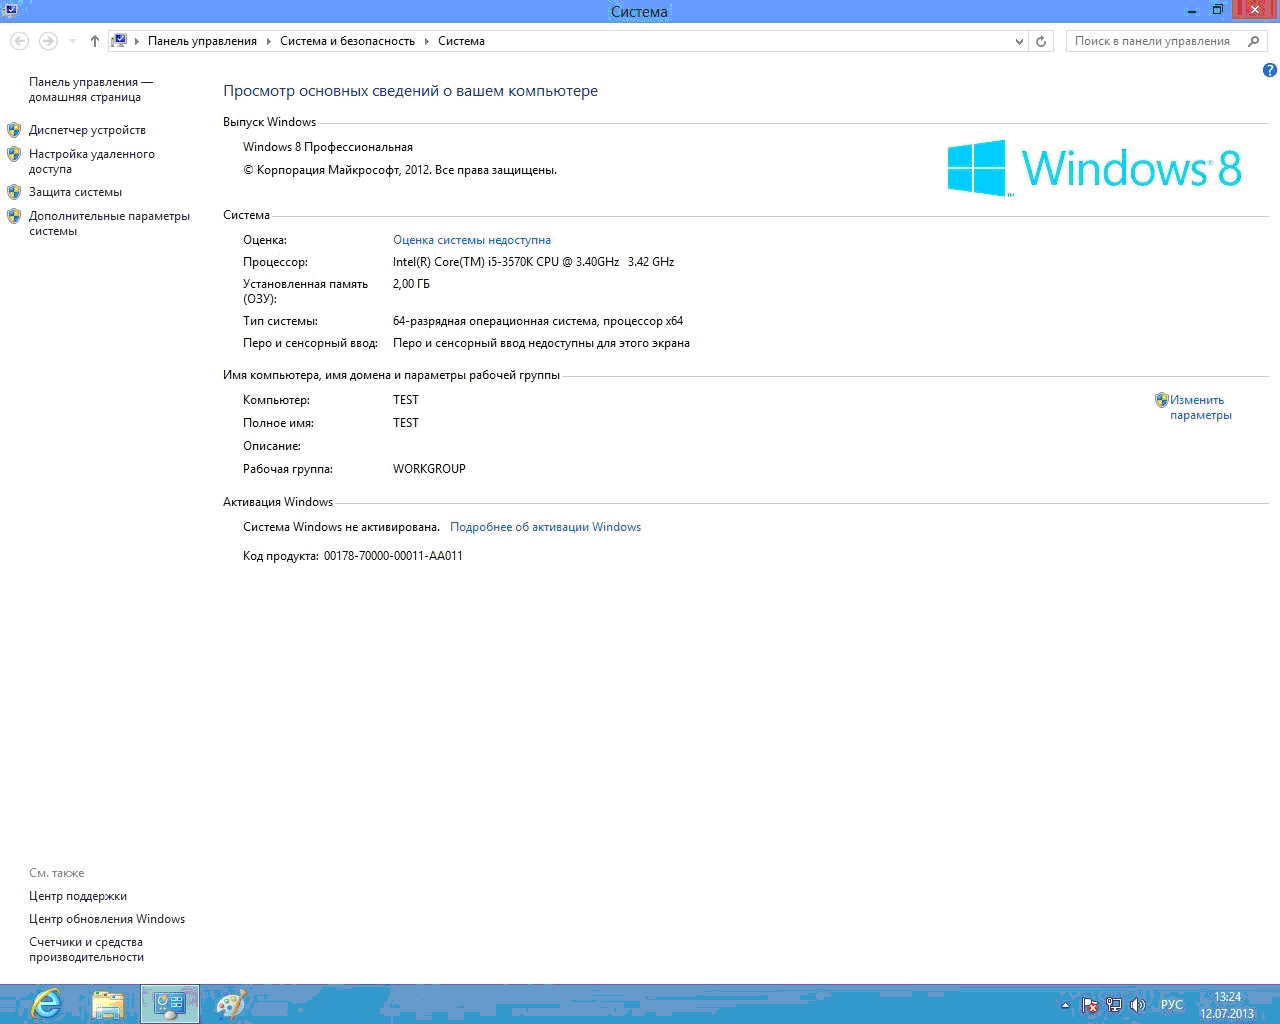 Купили Ноутбук Как Активировать Windows